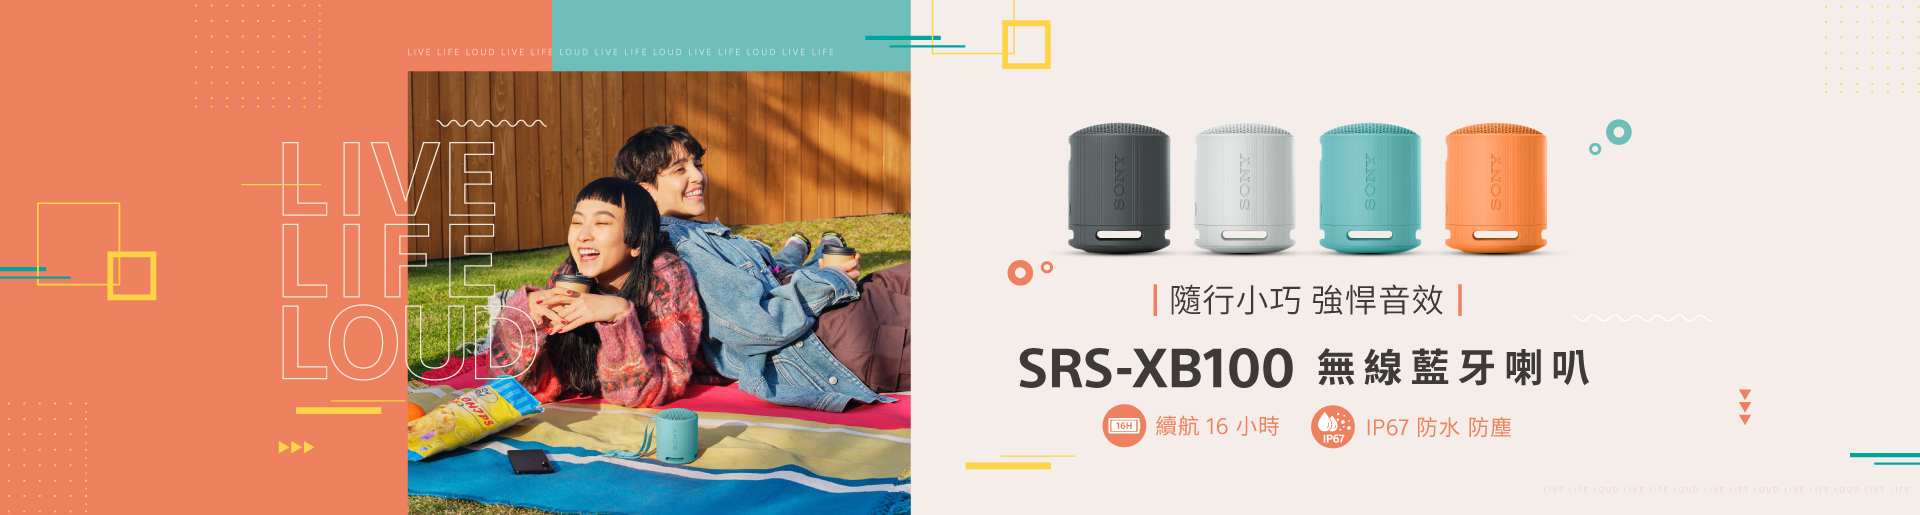 SRS-XB100 無線藍牙喇叭 隨行輕巧 音效強悍